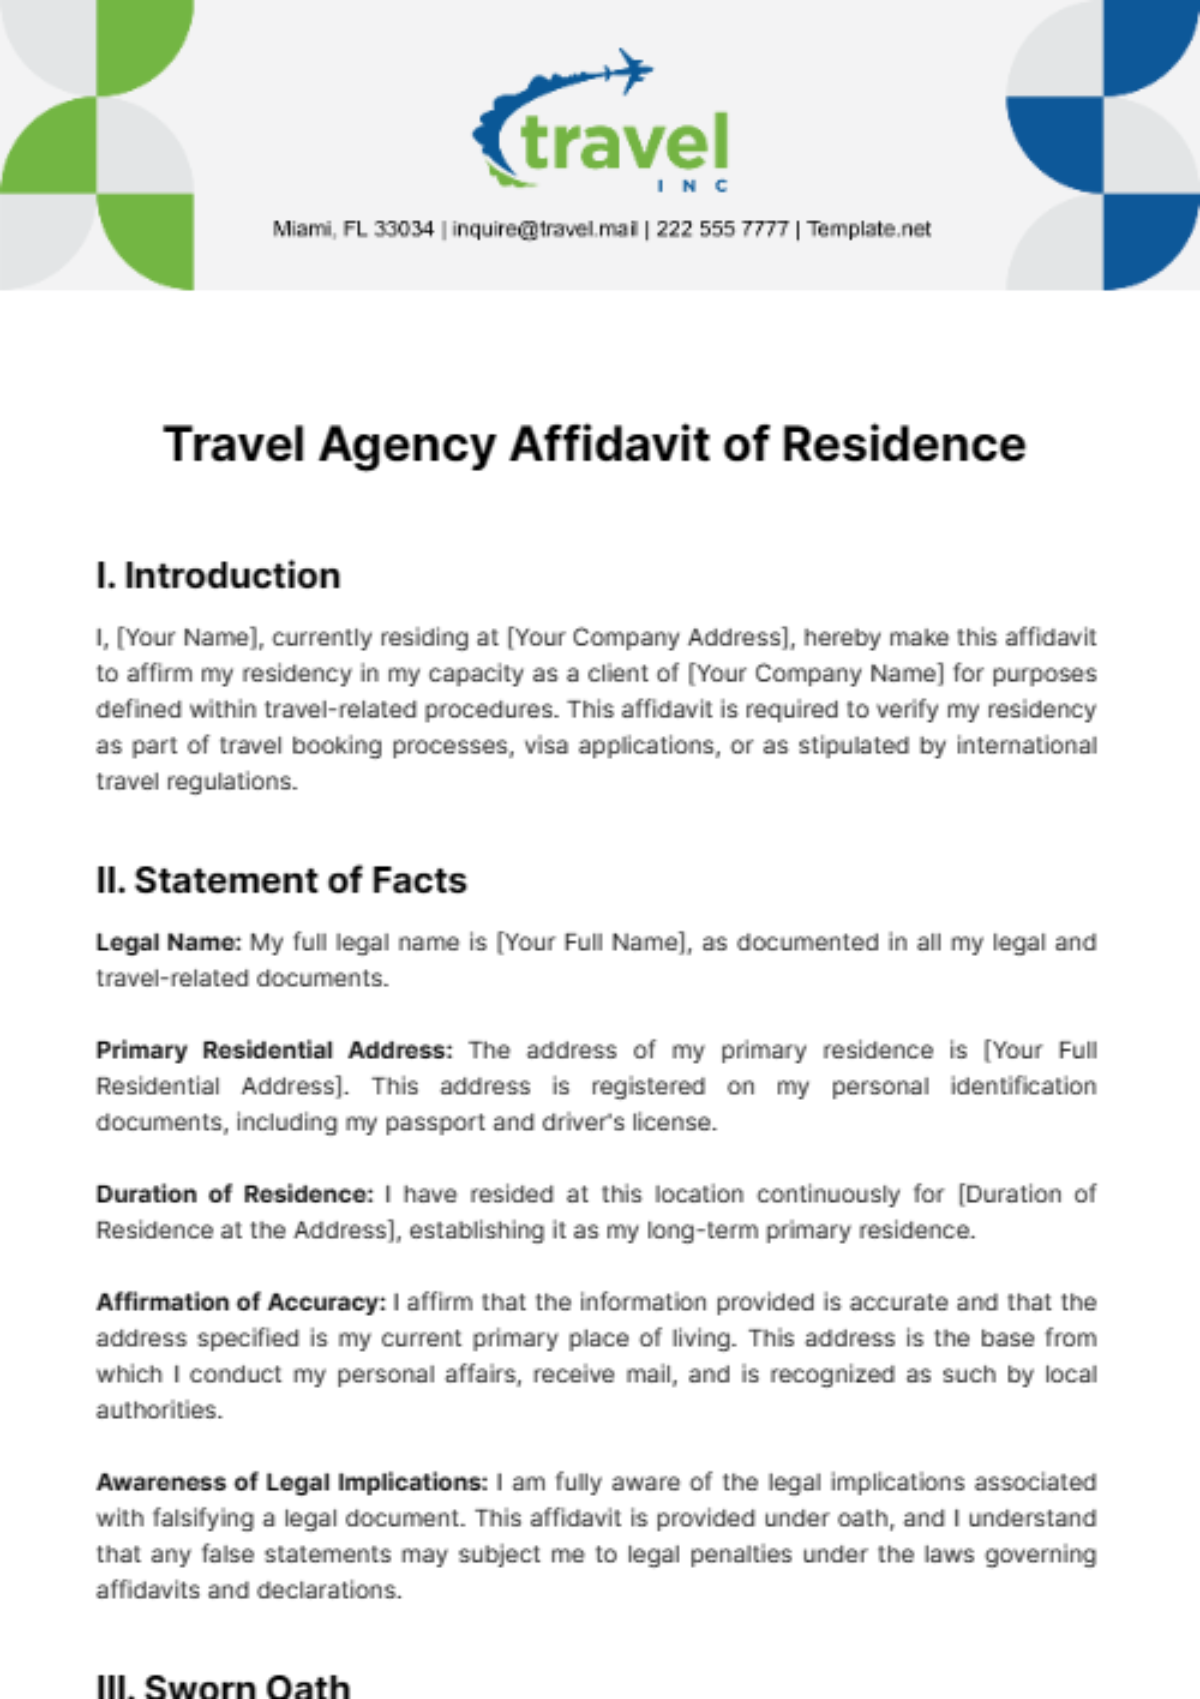 Travel Agency Affidavit of Residence Template